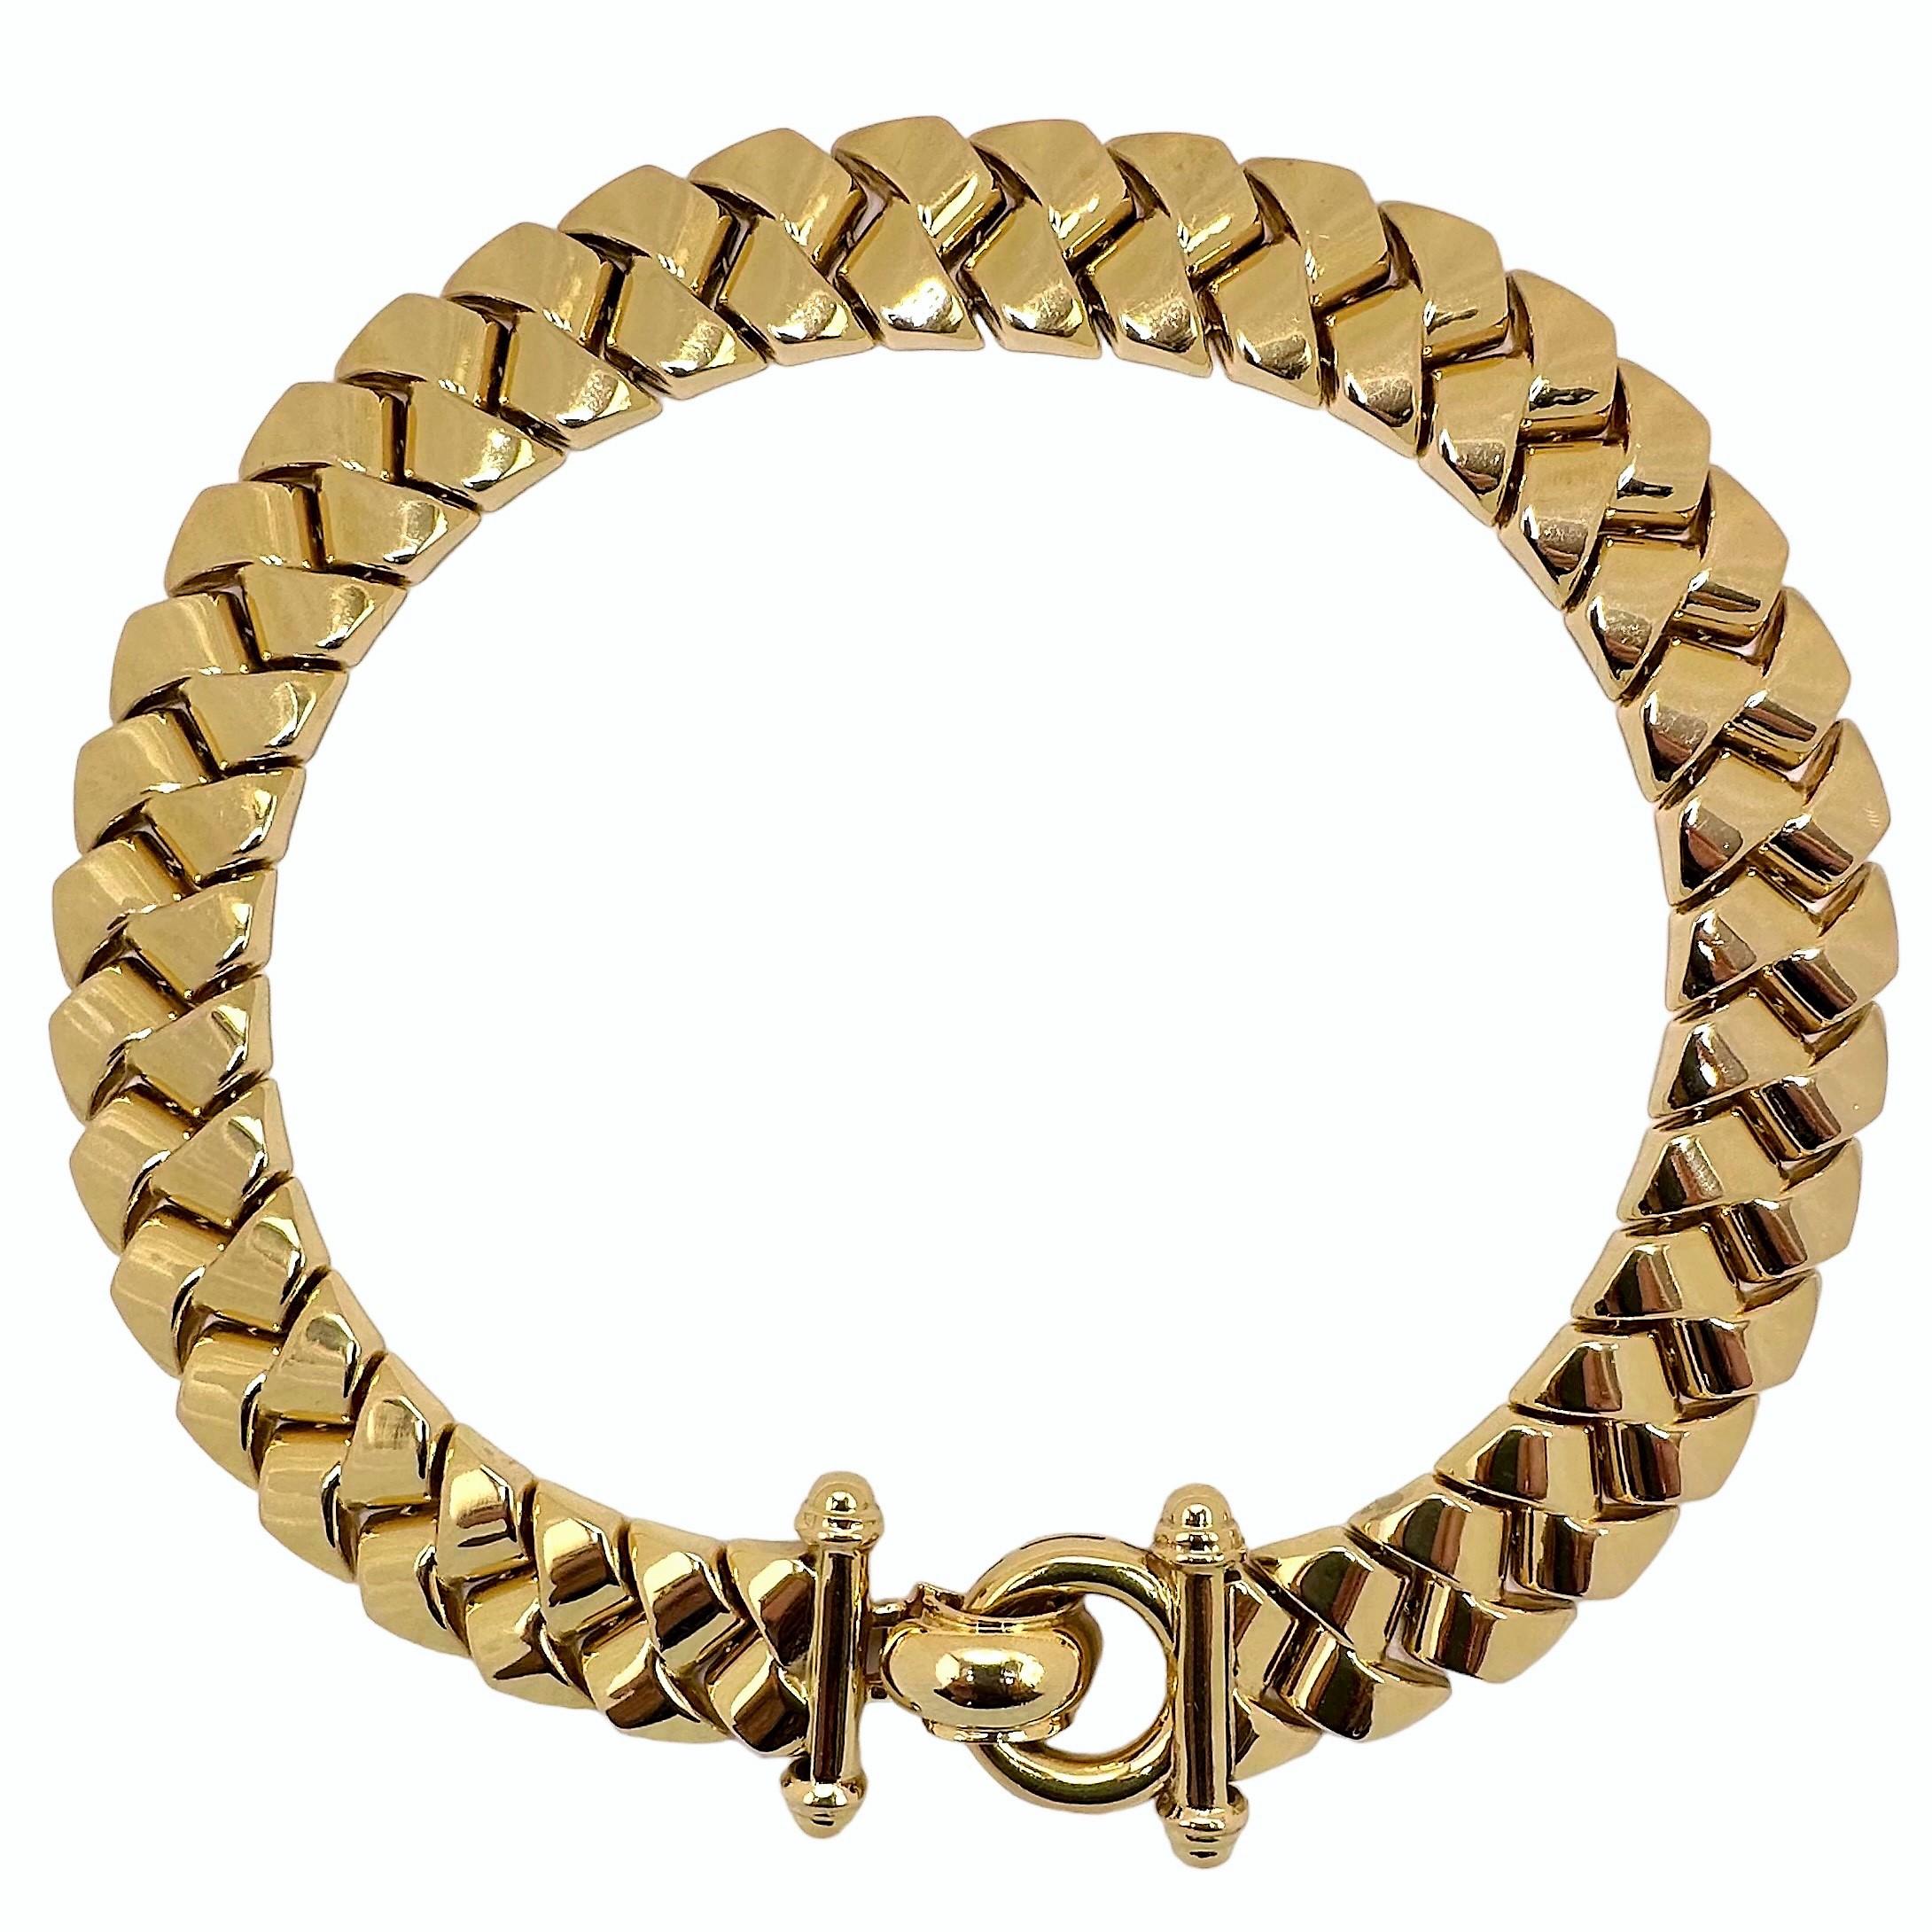 Diese hohle italienische 14-karätige Goldkette mit geflochtenen Gliedern aus dem späten 20. Jahrhundert ist sehr umfangreich im Aussehen und äußerst angenehm zu tragen. Maße: 15 Zoll lang und 11/16 Zoll breit. Der dramatische Ring und die